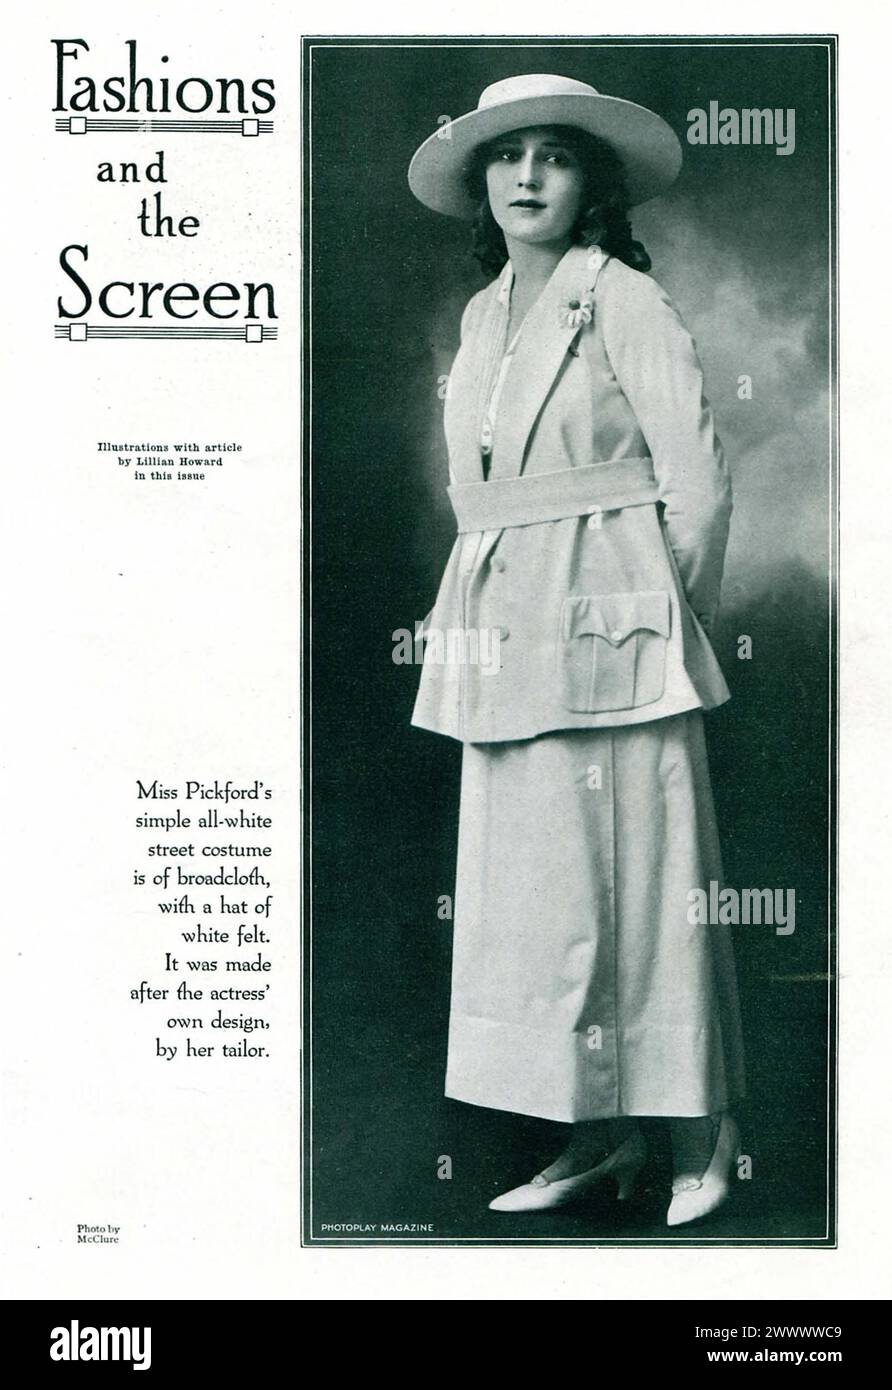 Porträt von Mary Pickford, der Kleidung modelliert, in einem bildzeitungsartikel für das Photoplay Magazine. Vintage Photoplay Magazine fotografisches Porträt der Filmschauspielerin, um 1915 Stockfoto